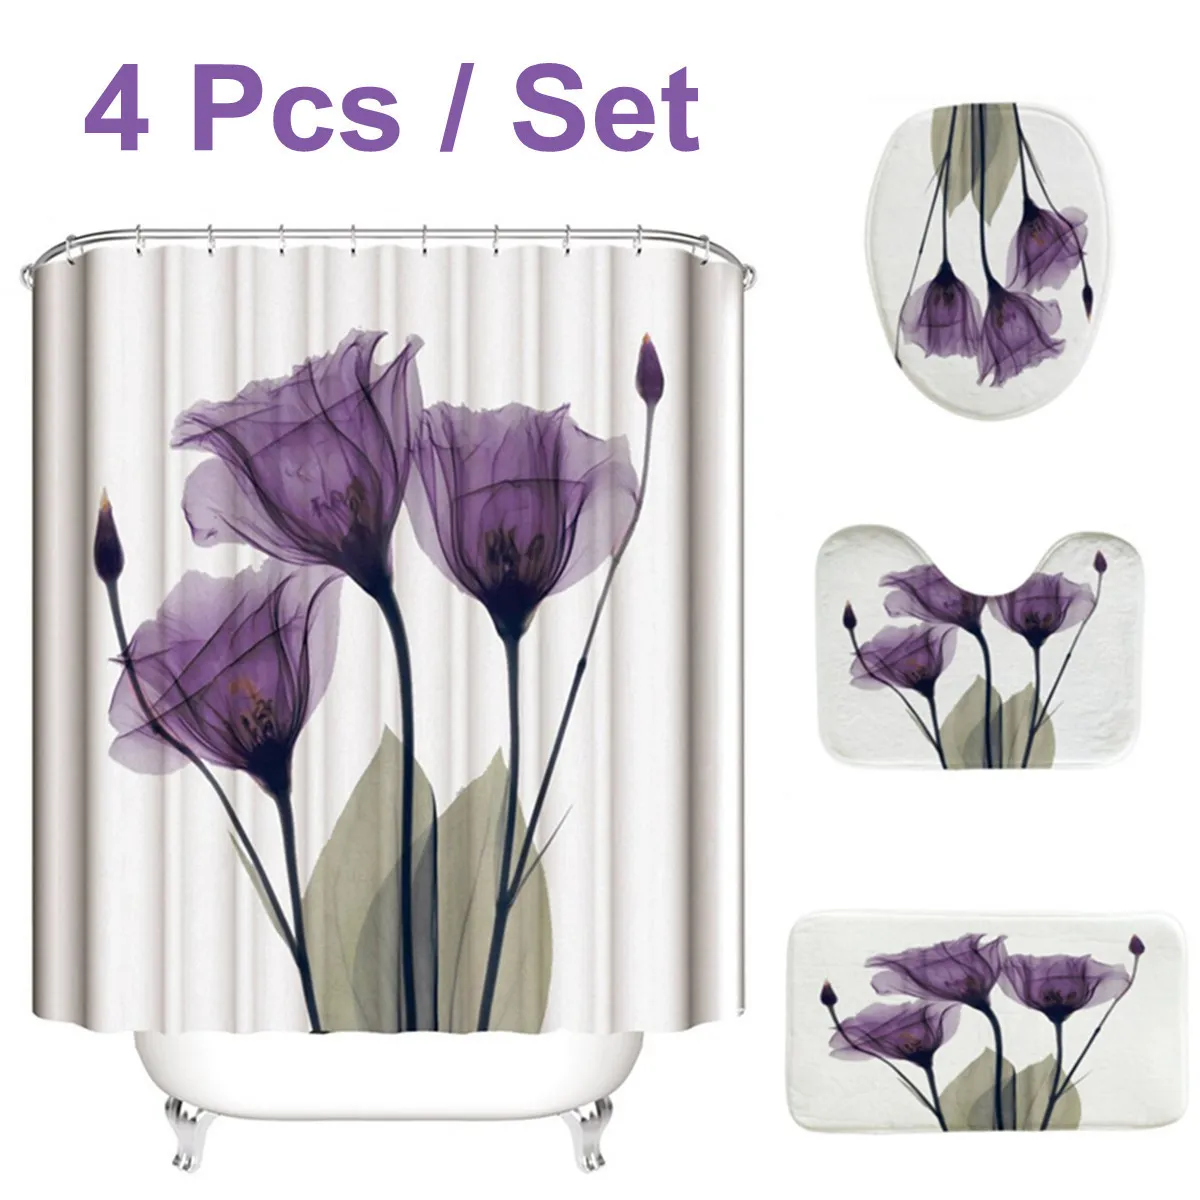 4st Flanell Surface Badrummattor duschgardin Nonslip Rug Lid Toalett Cover Bath Mat Set Purple Flowers Print Decor Home T20074837513